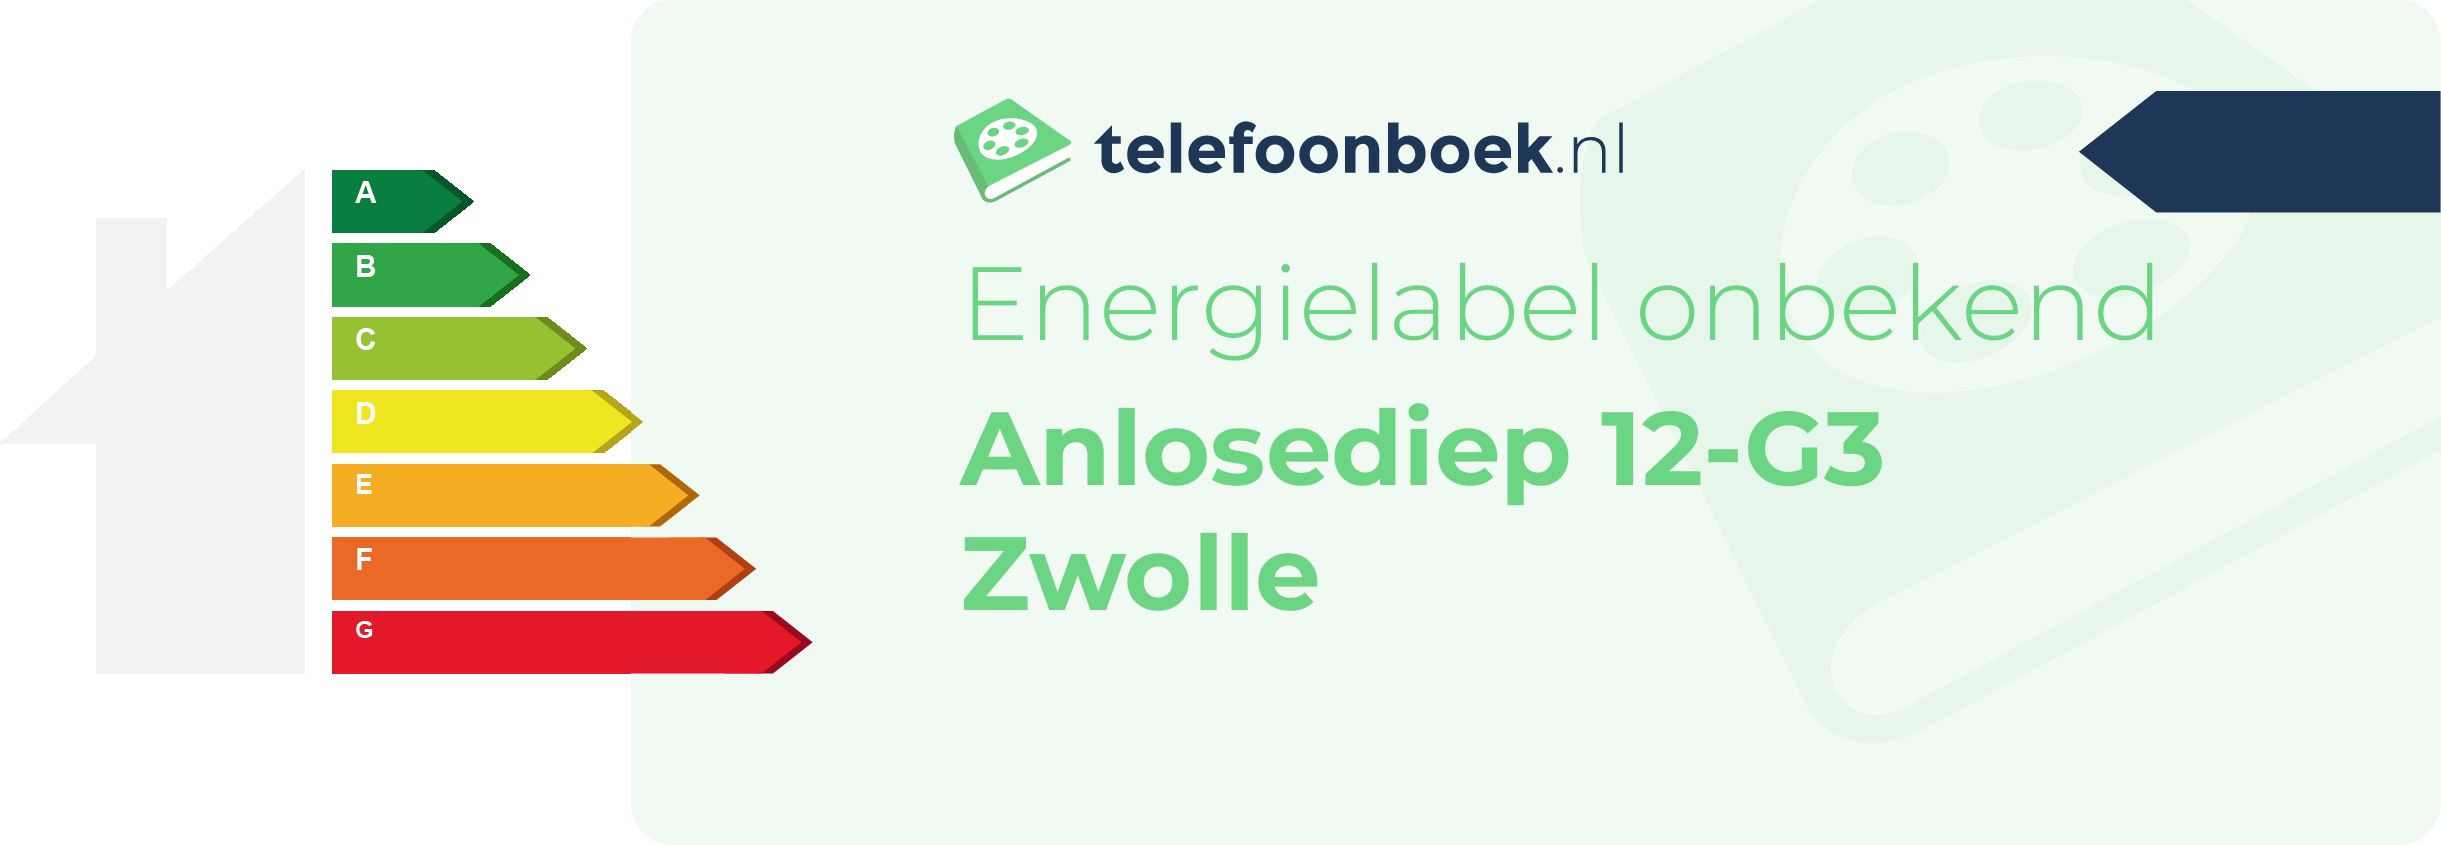 Energielabel Anlosediep 12-G3 Zwolle